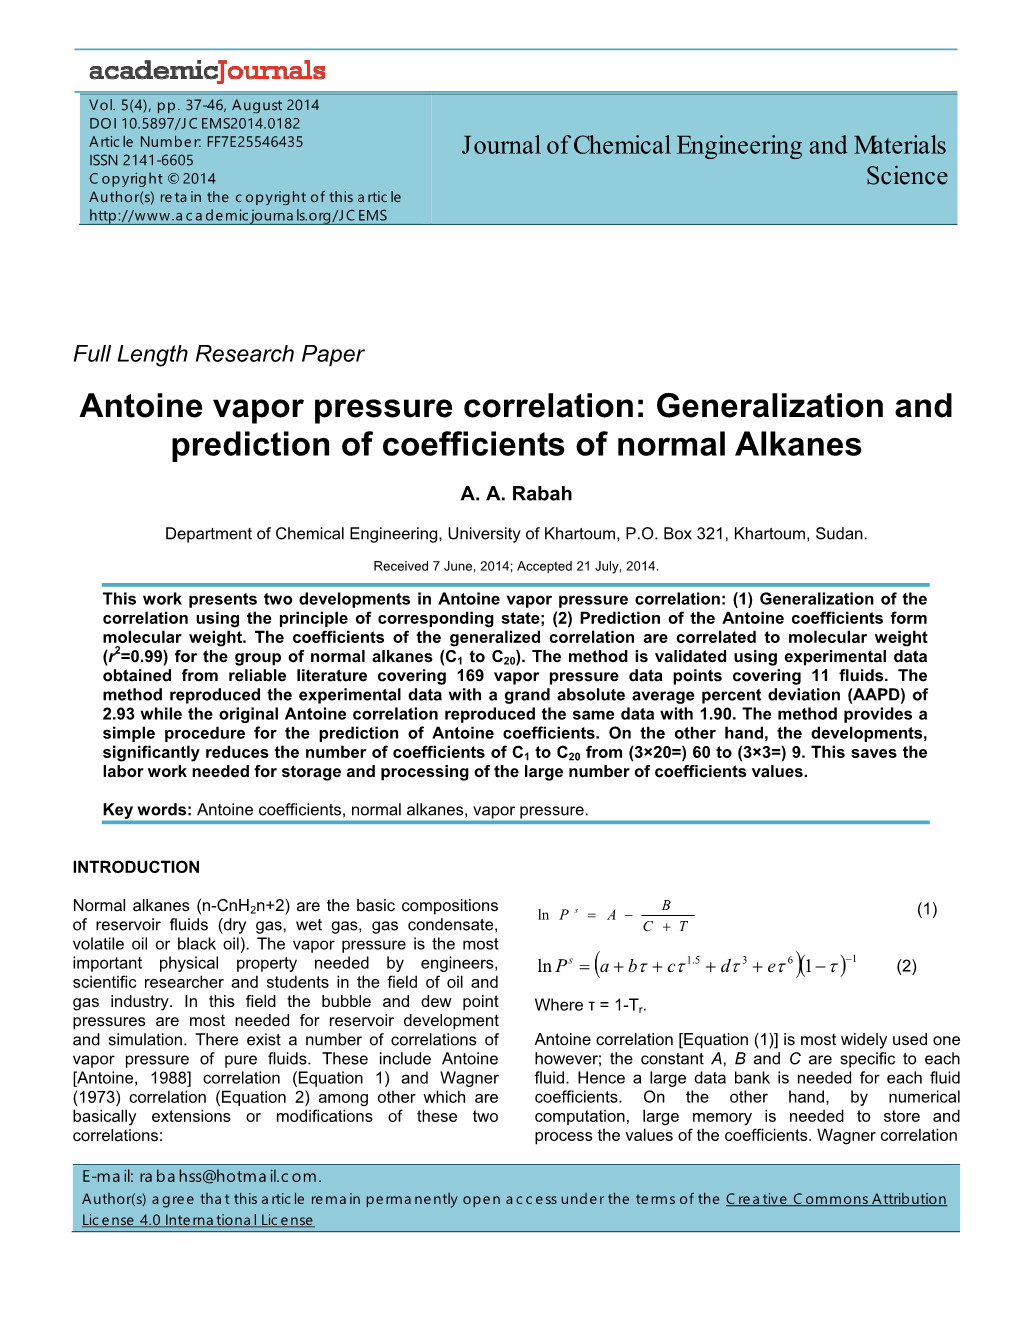 Antoine Vapor Pressure Correlation: Generalization and Prediction of Coefficients of Normal Alkanes